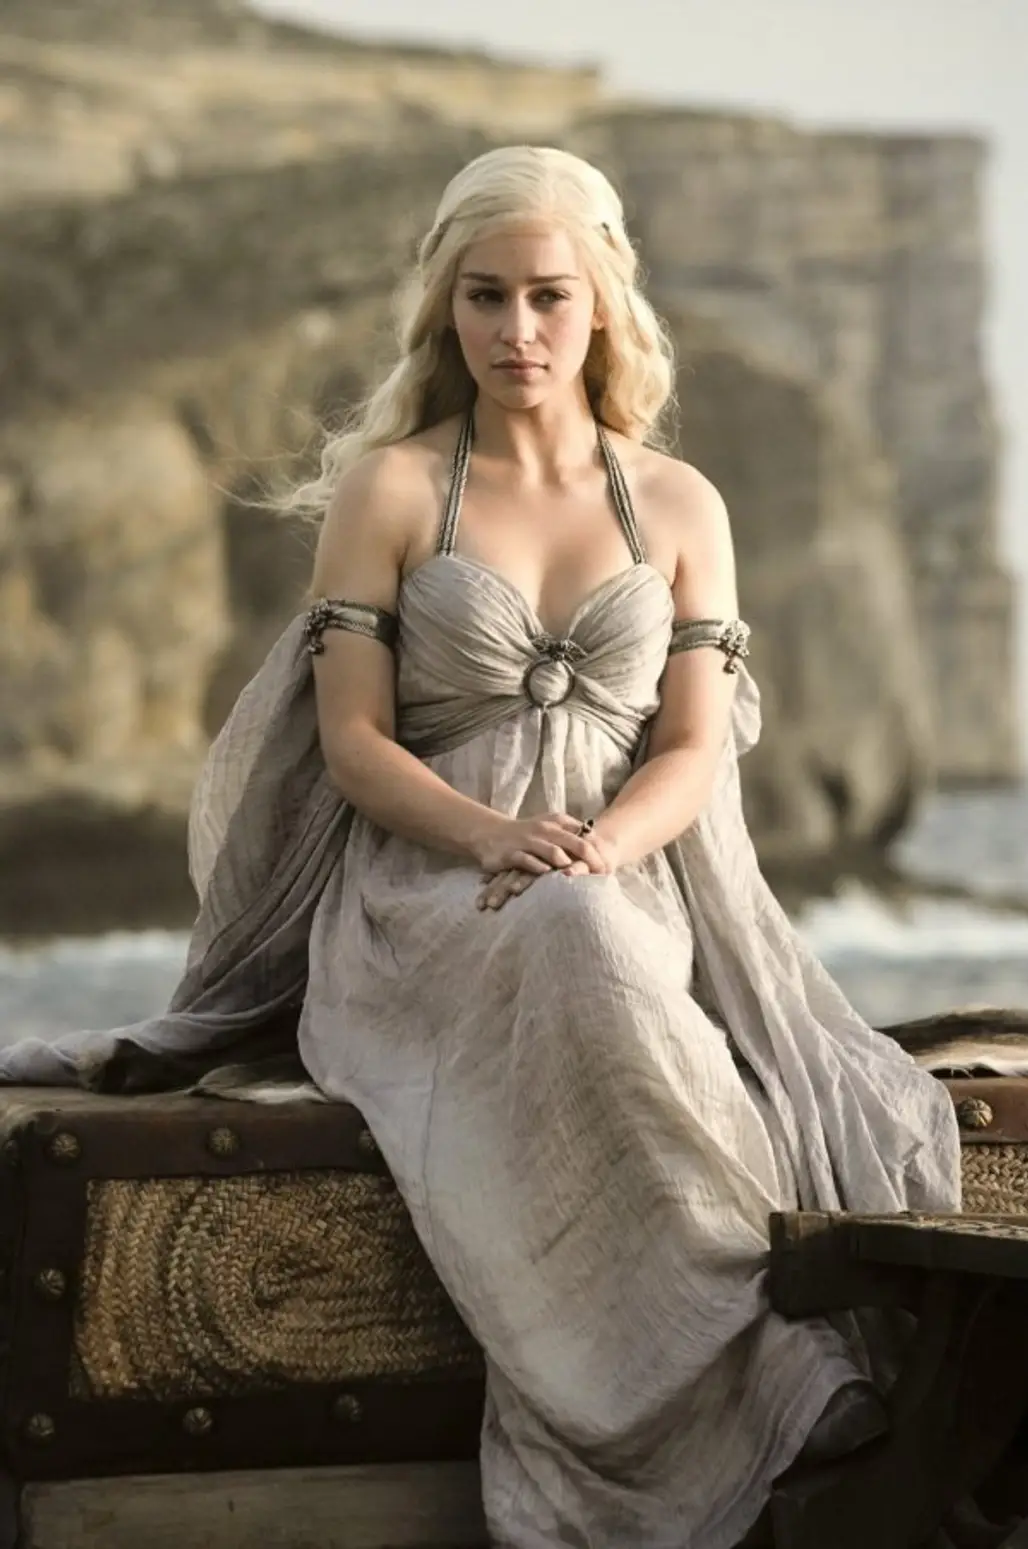 Daenerys Targaryen, Game of Thrones